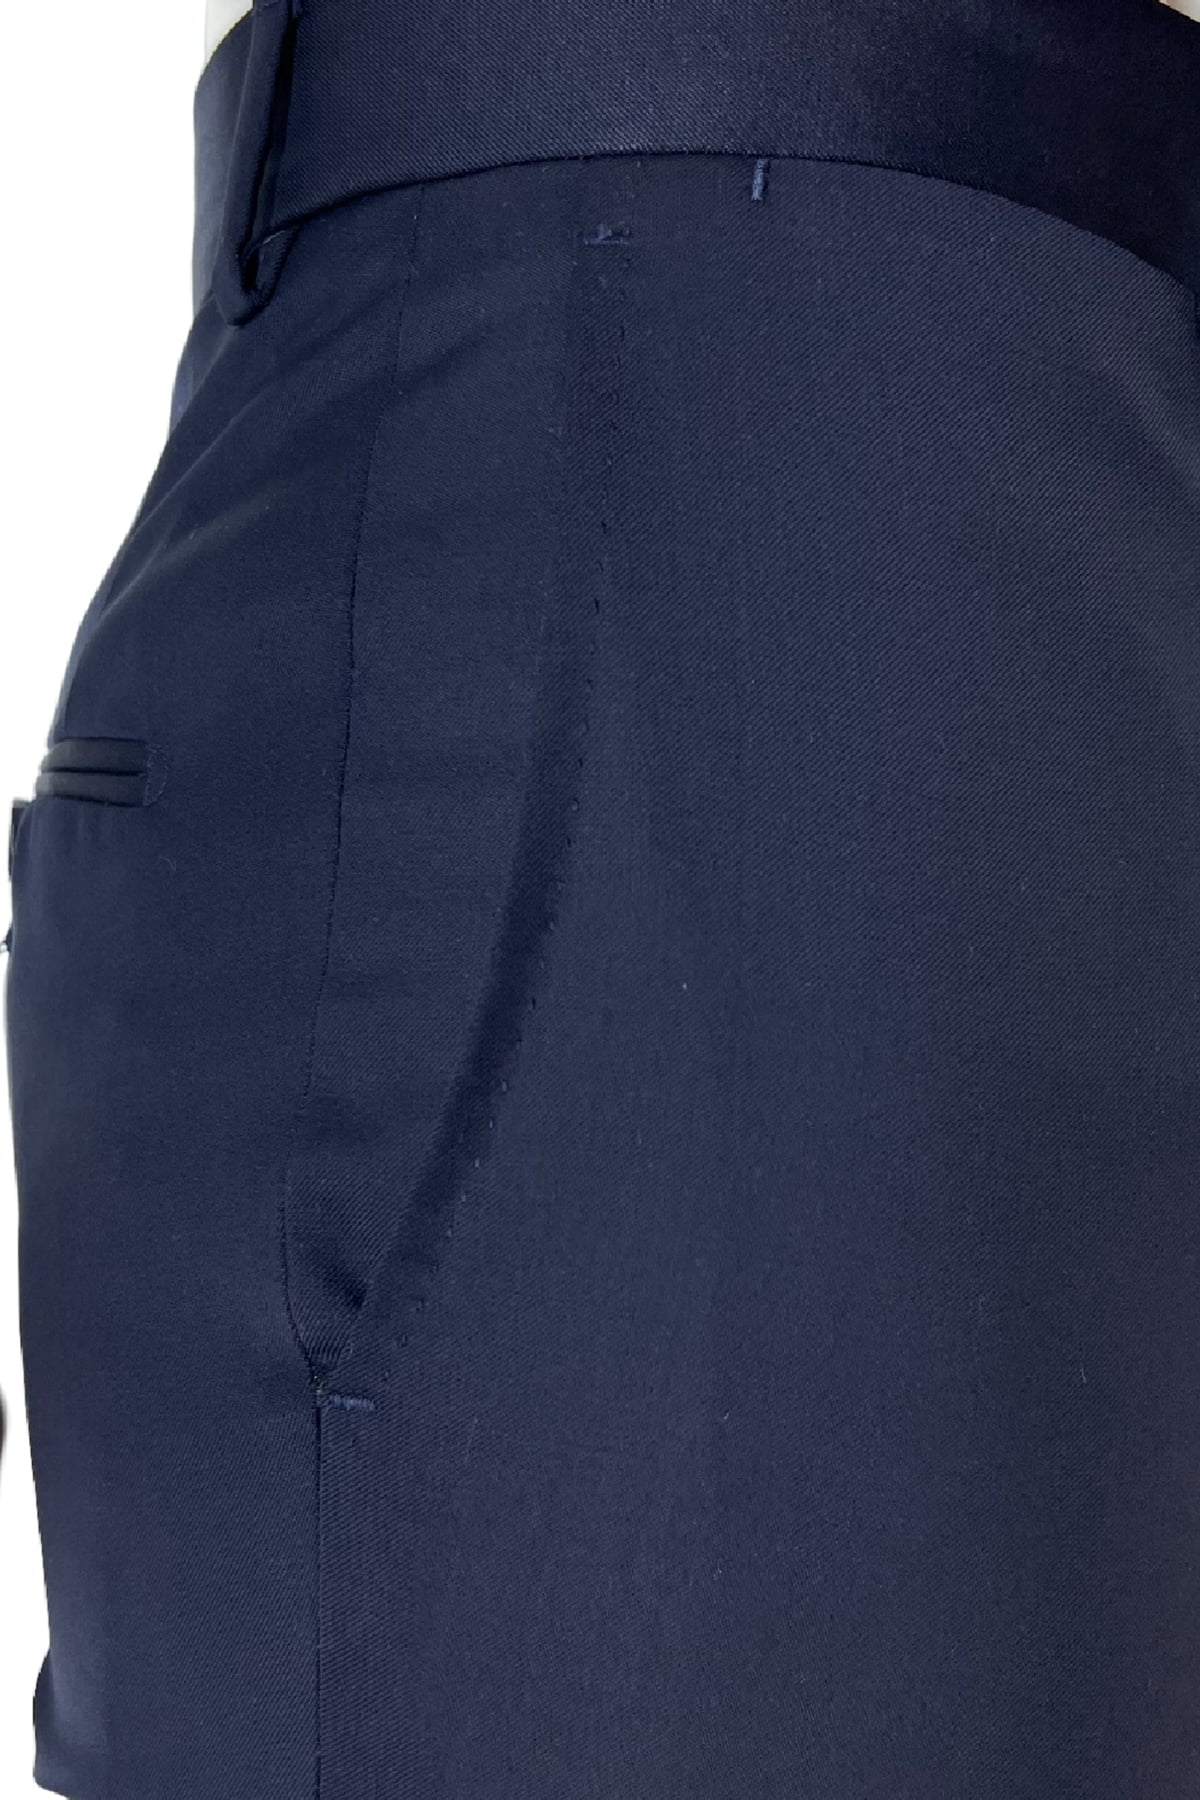 Pantalone uomo Blu Navy tasca america in fresco lana 100% Vitale Barberis Canonico